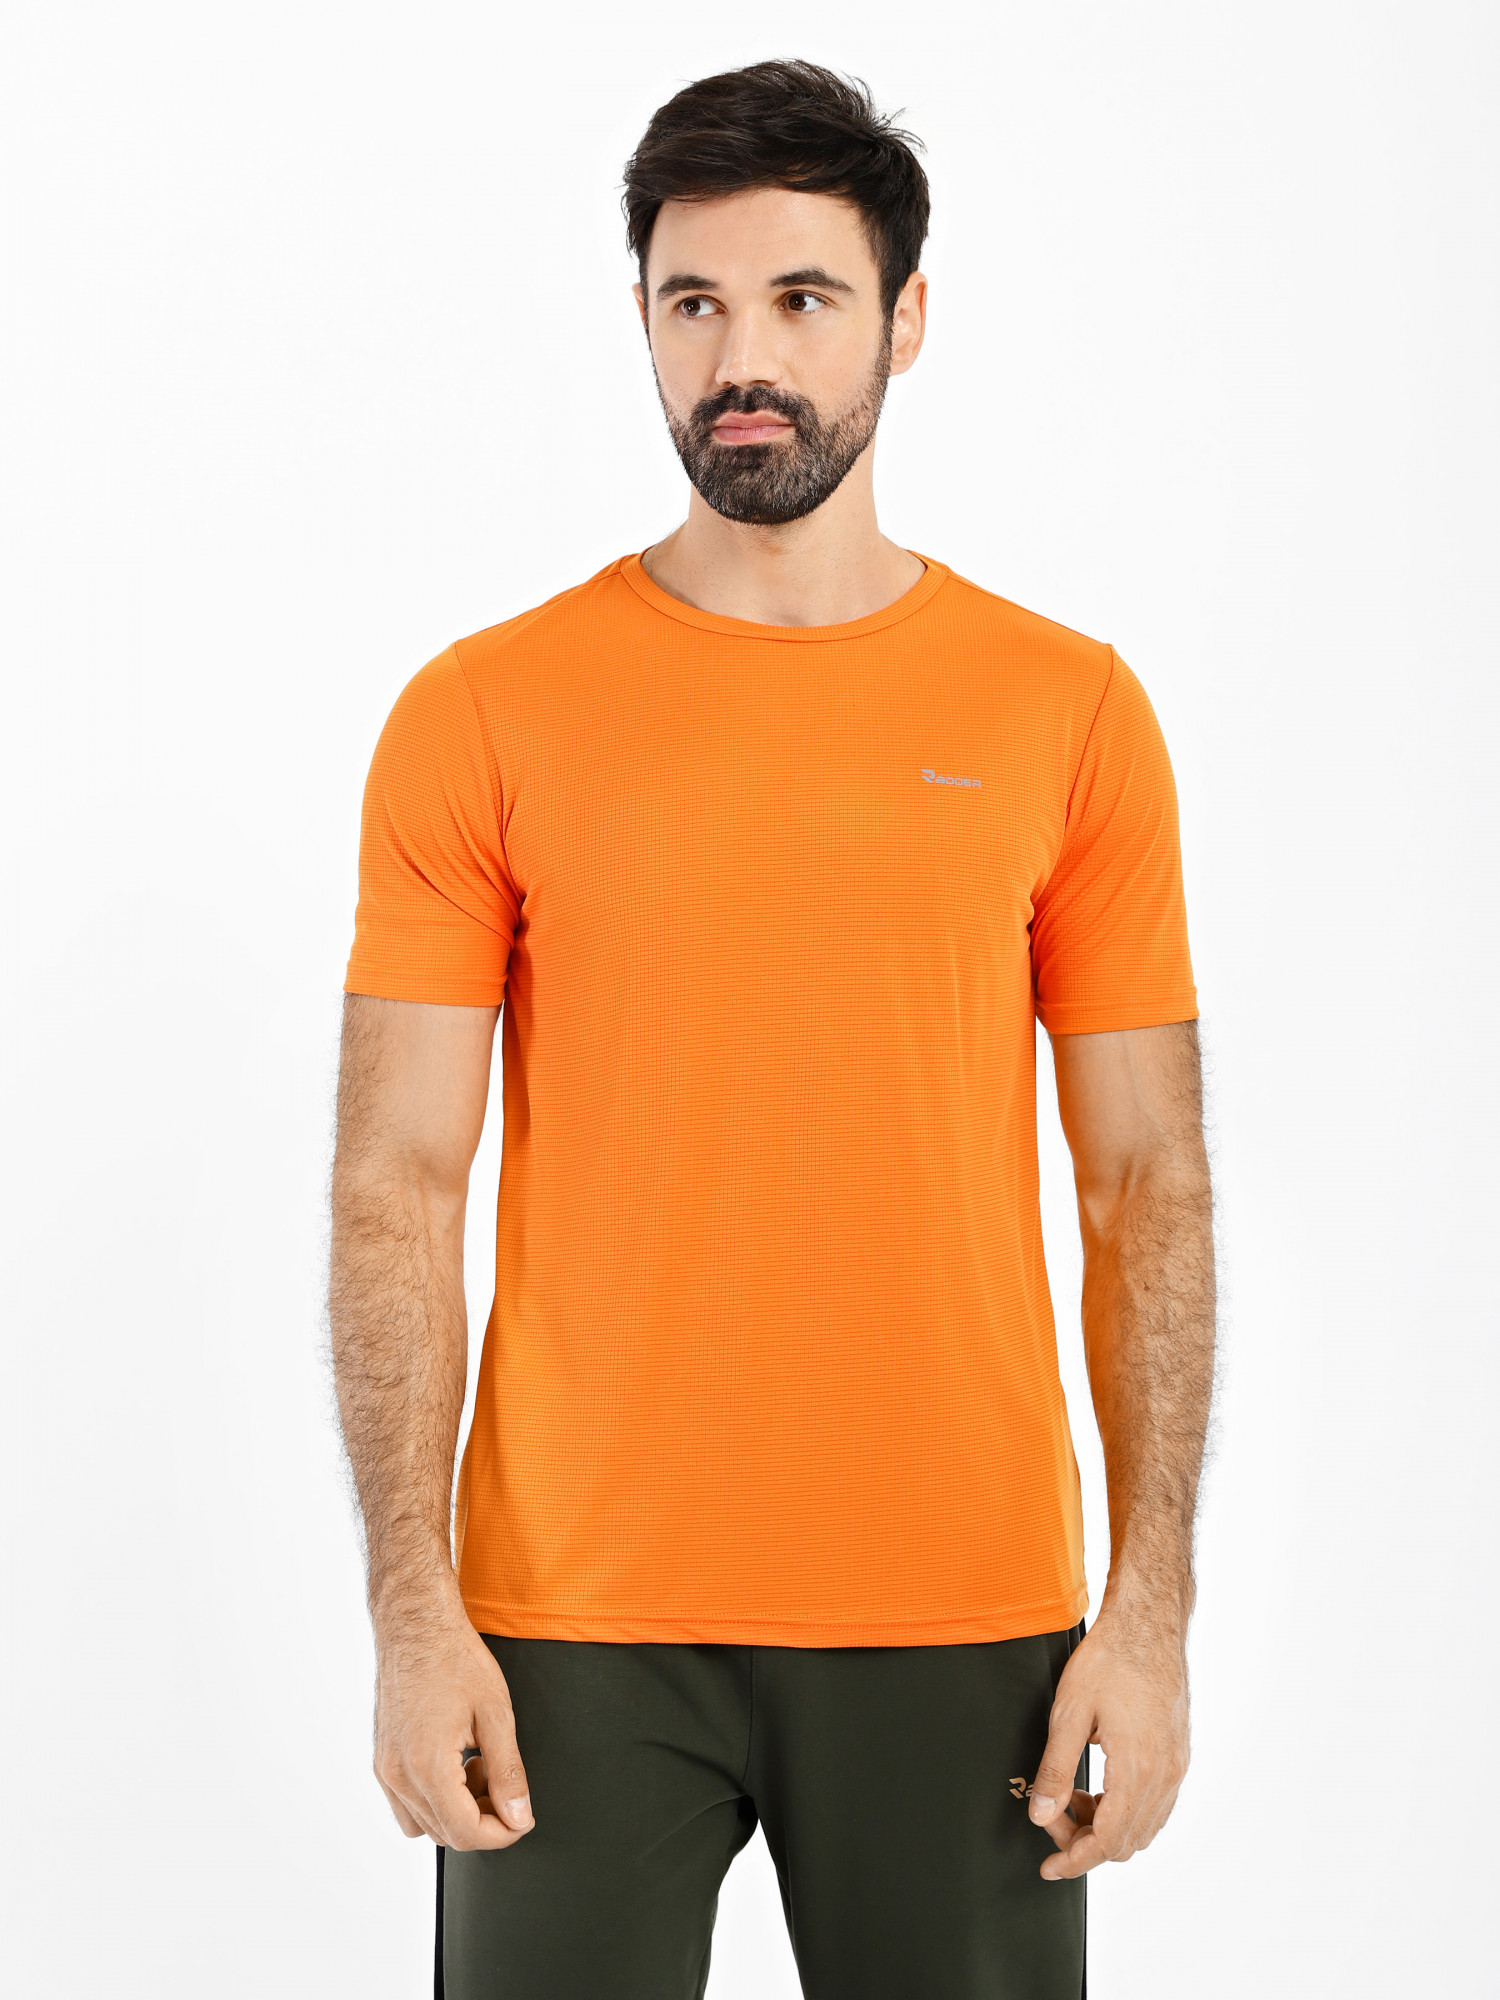 Футболка мужская Radder Bargot оранжевая 120015-840 изображение 6